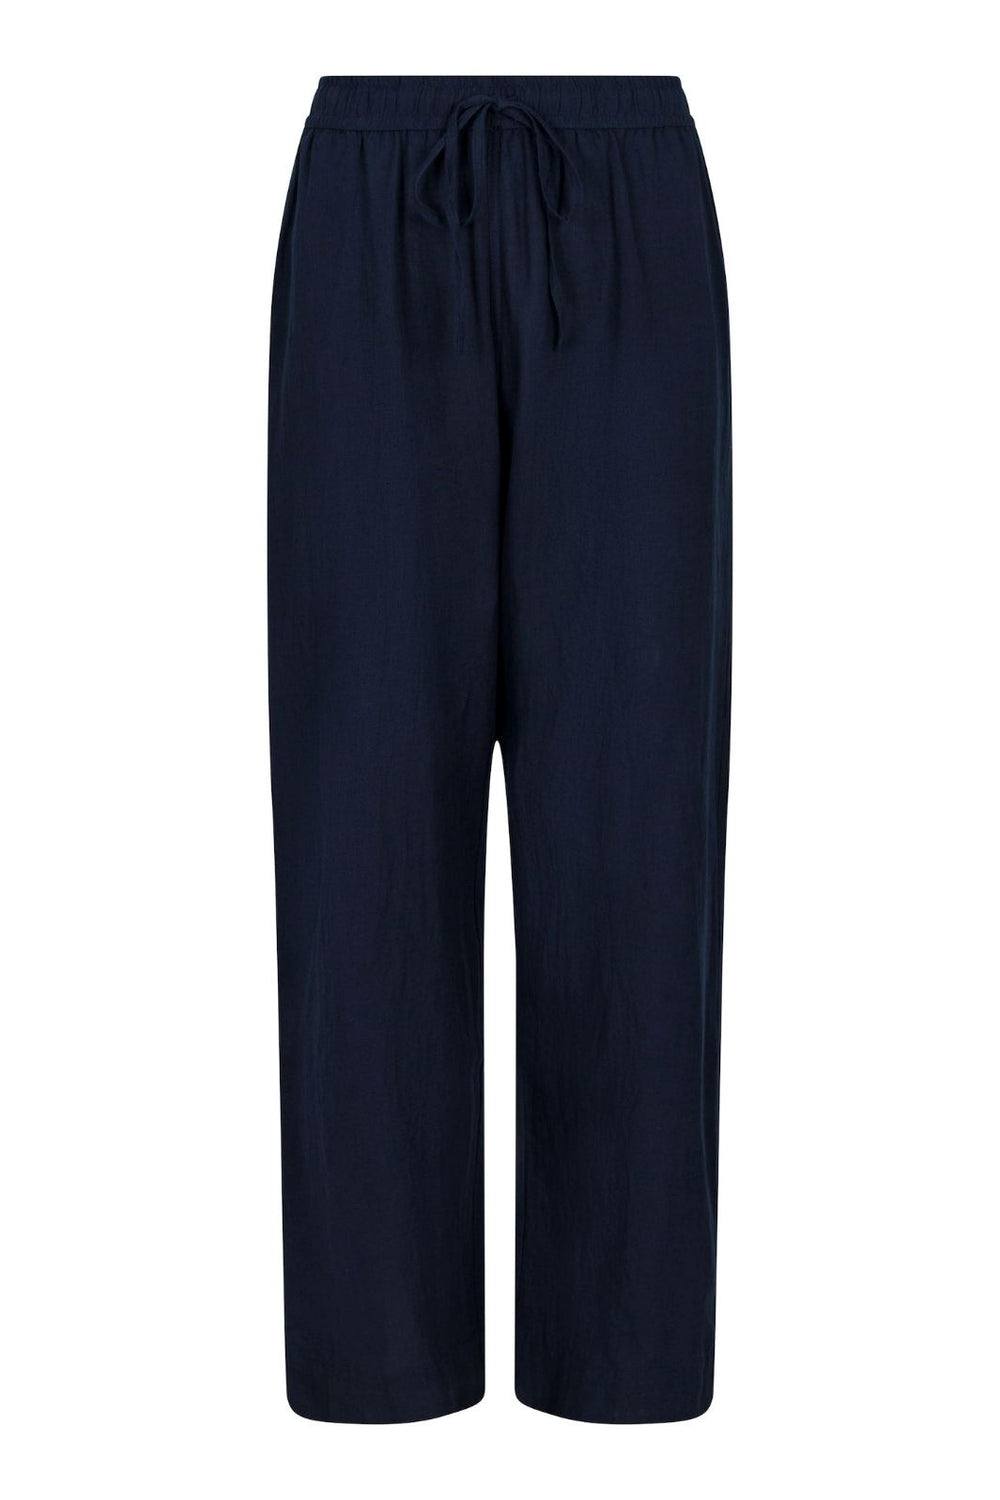 Neo Noir - Sonar Linen Pants - Navy Bukser 